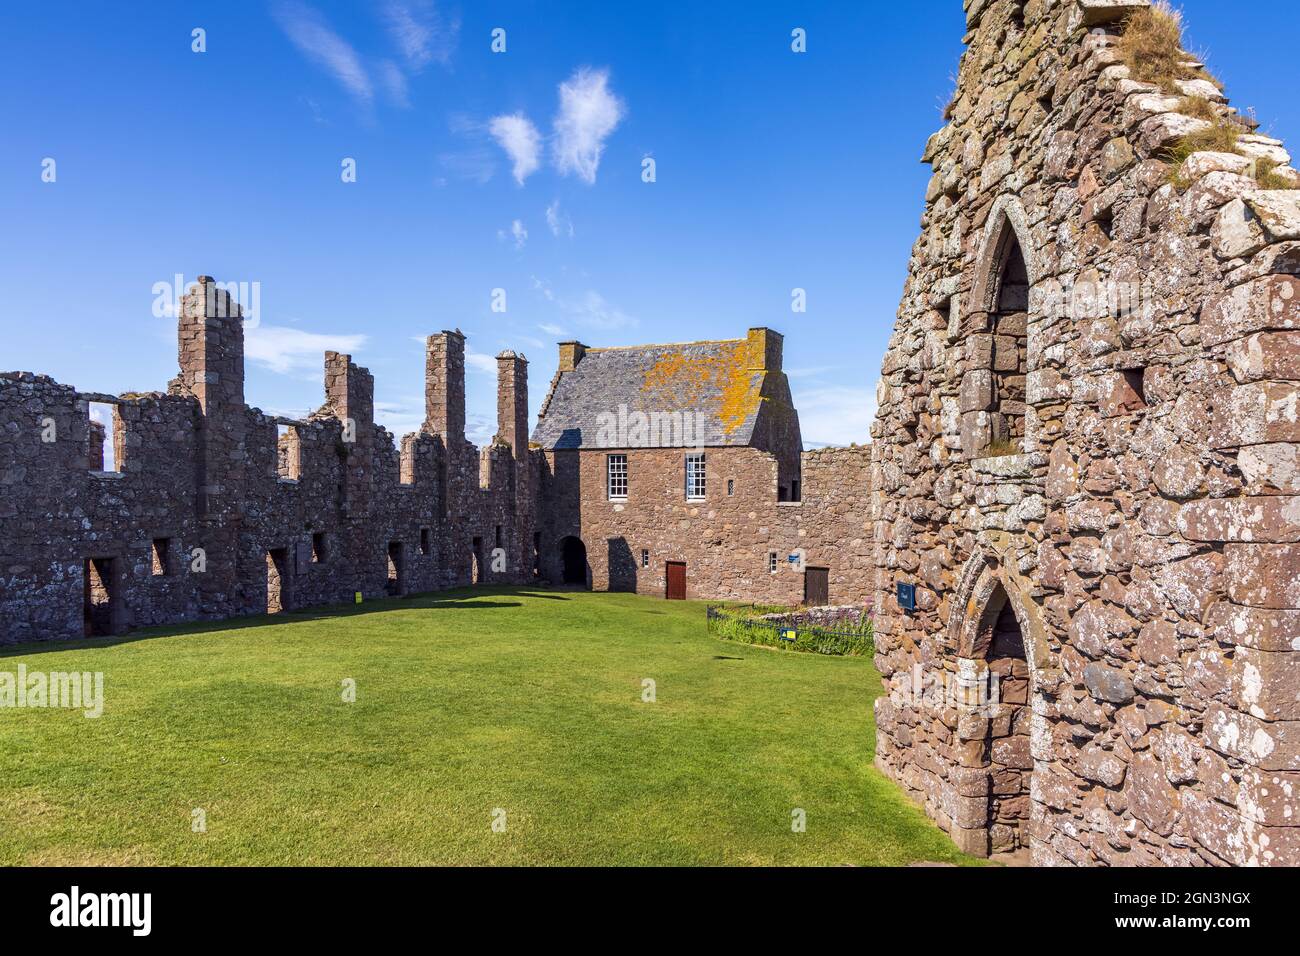 Vestiges de la forteresse médiévale, le château de Dunnottar, situé sur un promontoire rocheux sur la côte nord-est de l'Écosse, près de Stonehaven, Aberdeenshire. Banque D'Images